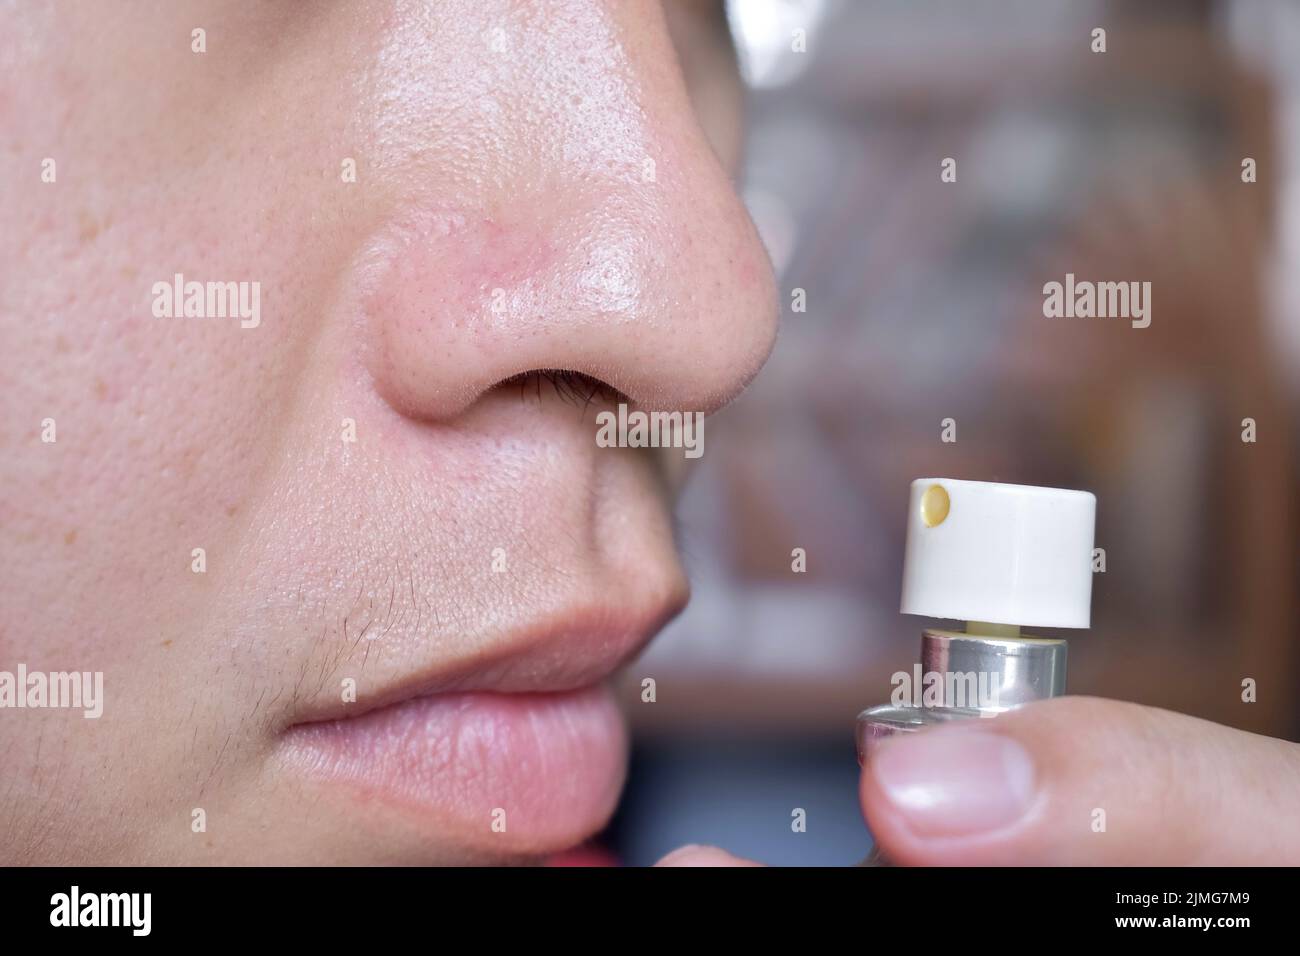 Sud-est asiatico, cinese e Myanmar giovane uomo con influenza fredda ottiene perdita di odore chiamato anosmia. Odora profumo. Foto Stock